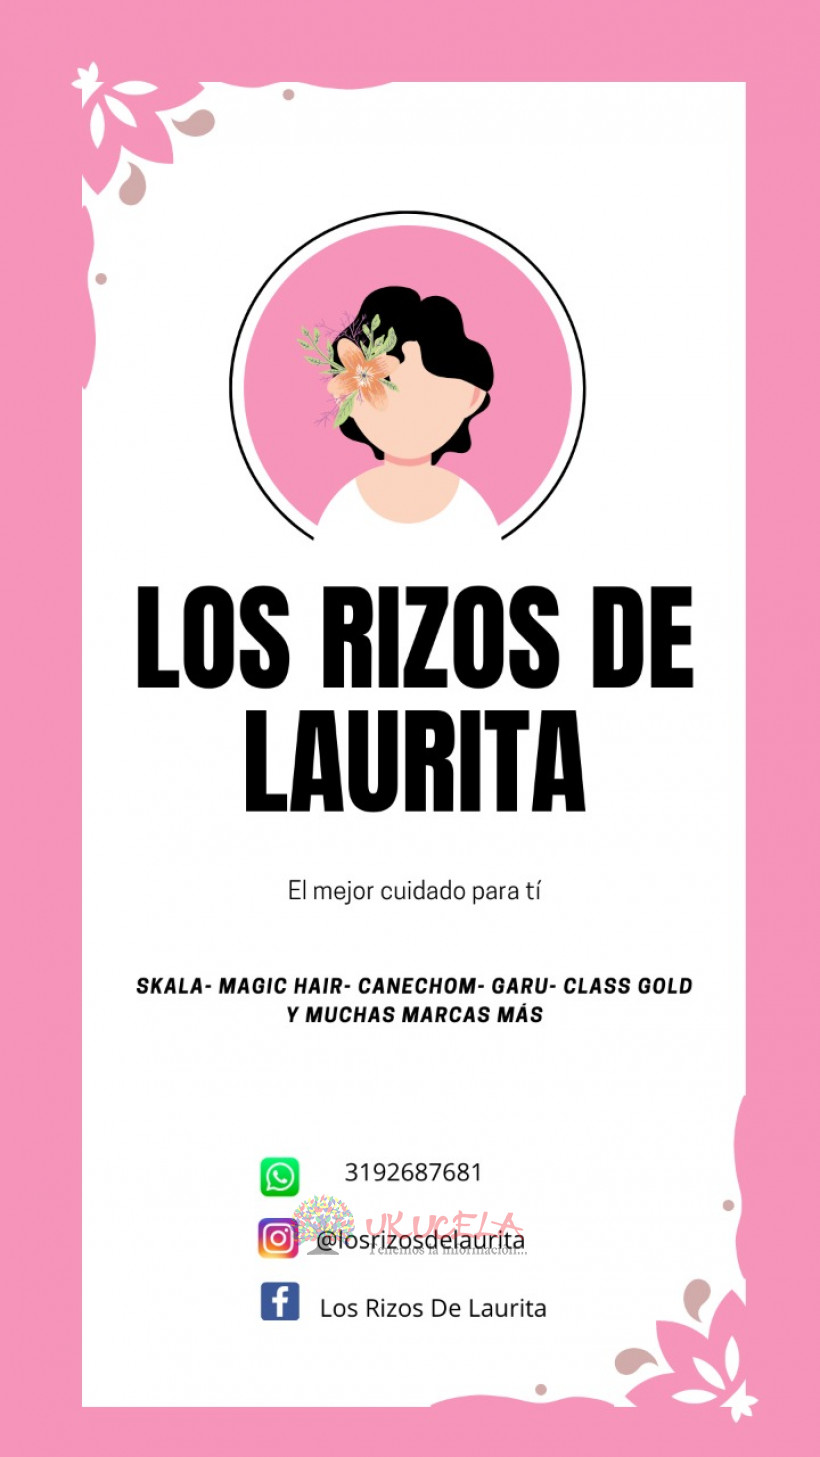 Los Rizos De Laurita